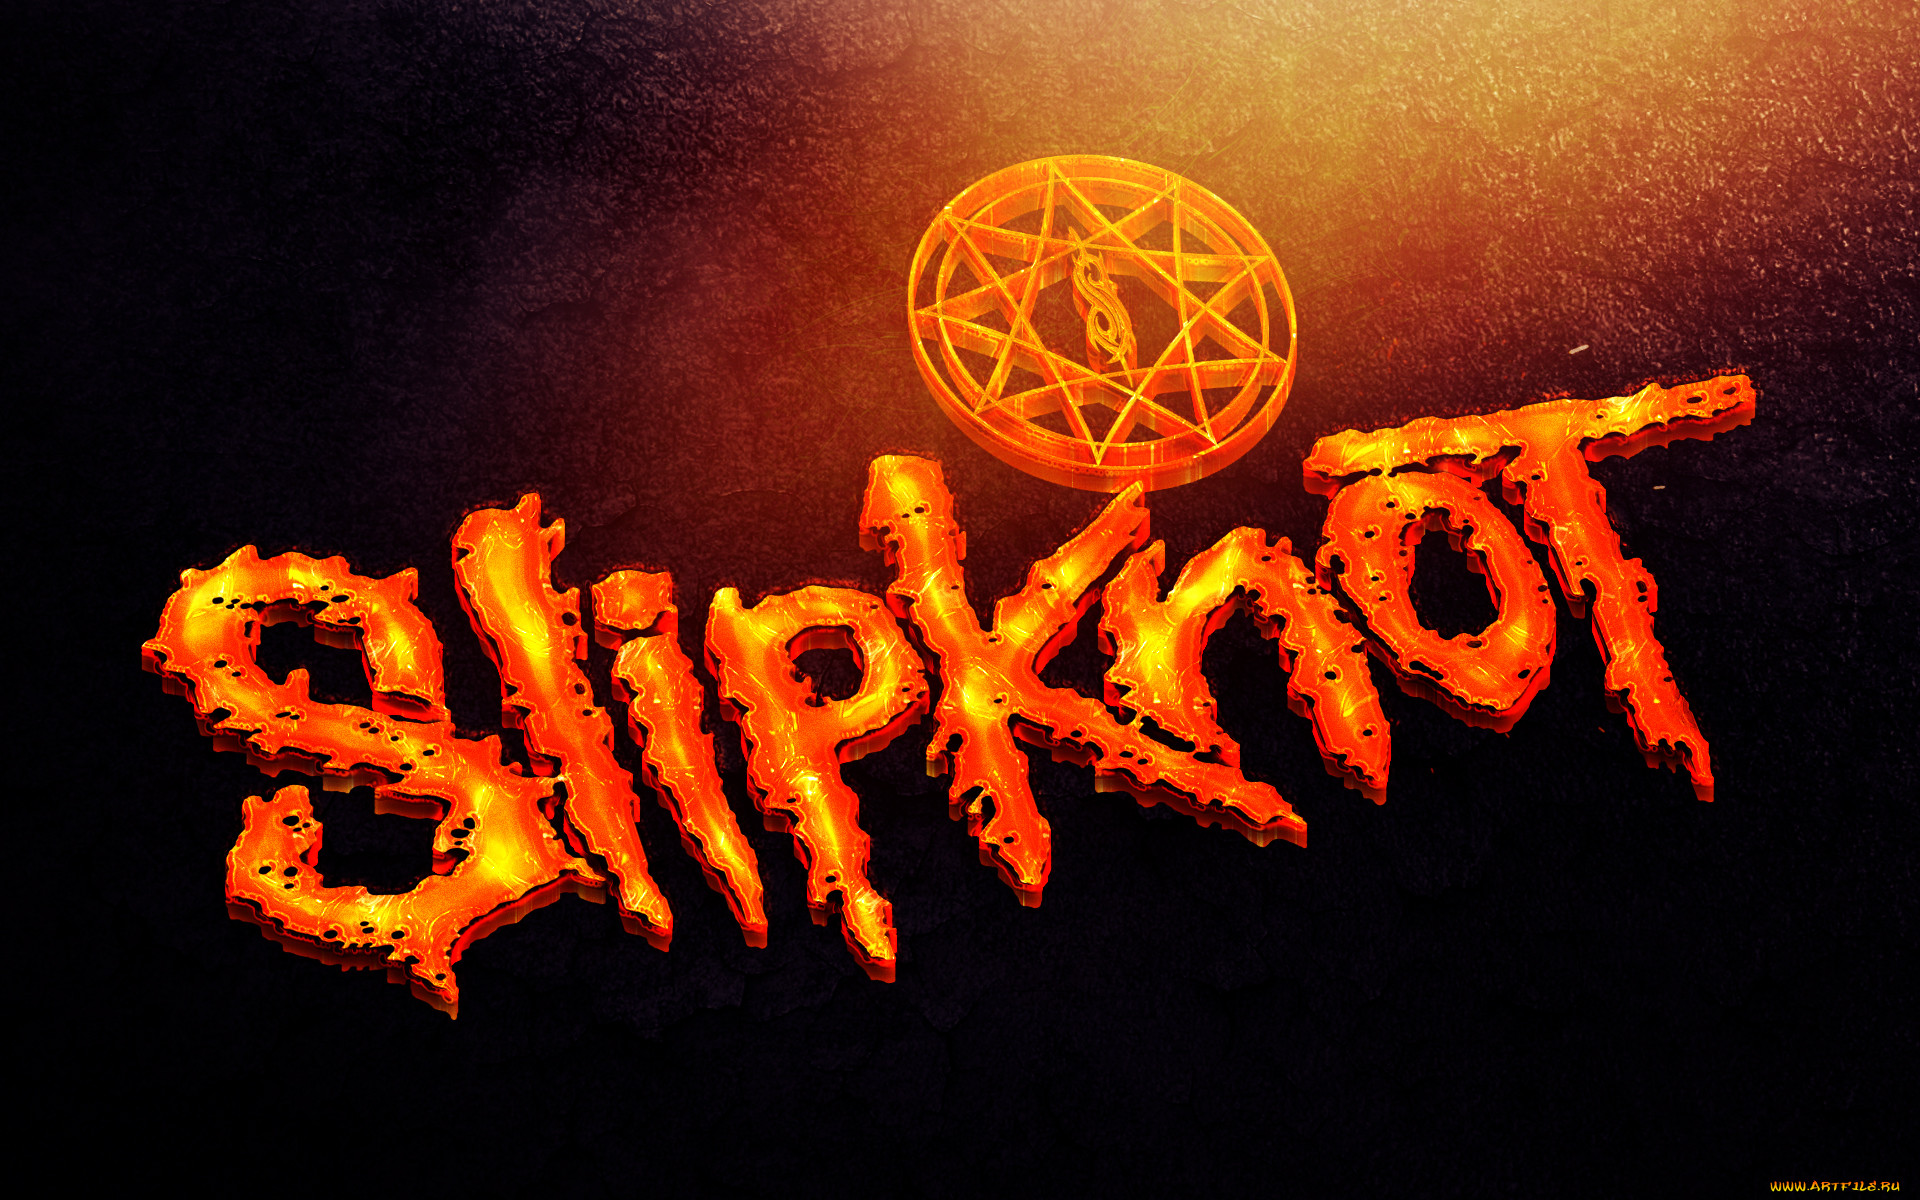 , slipknot